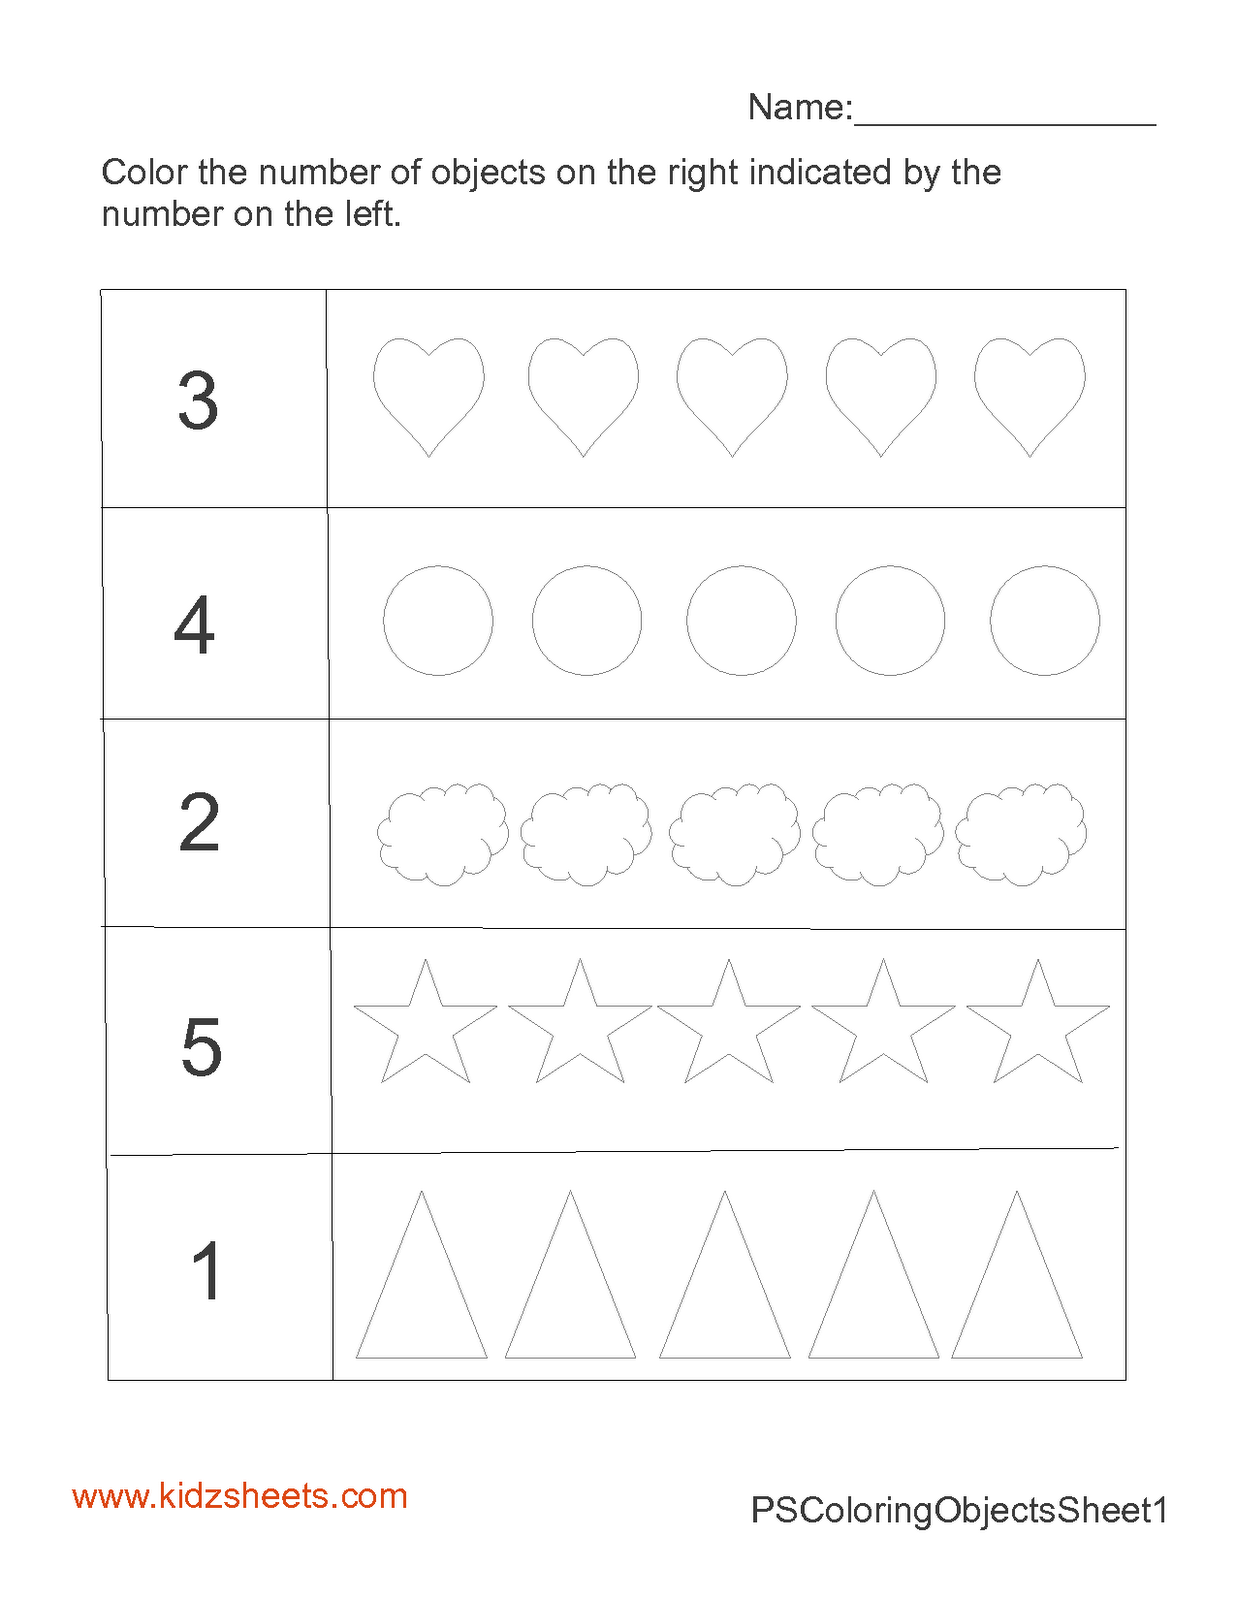 Preschool Counting Numbers Worksheets Image